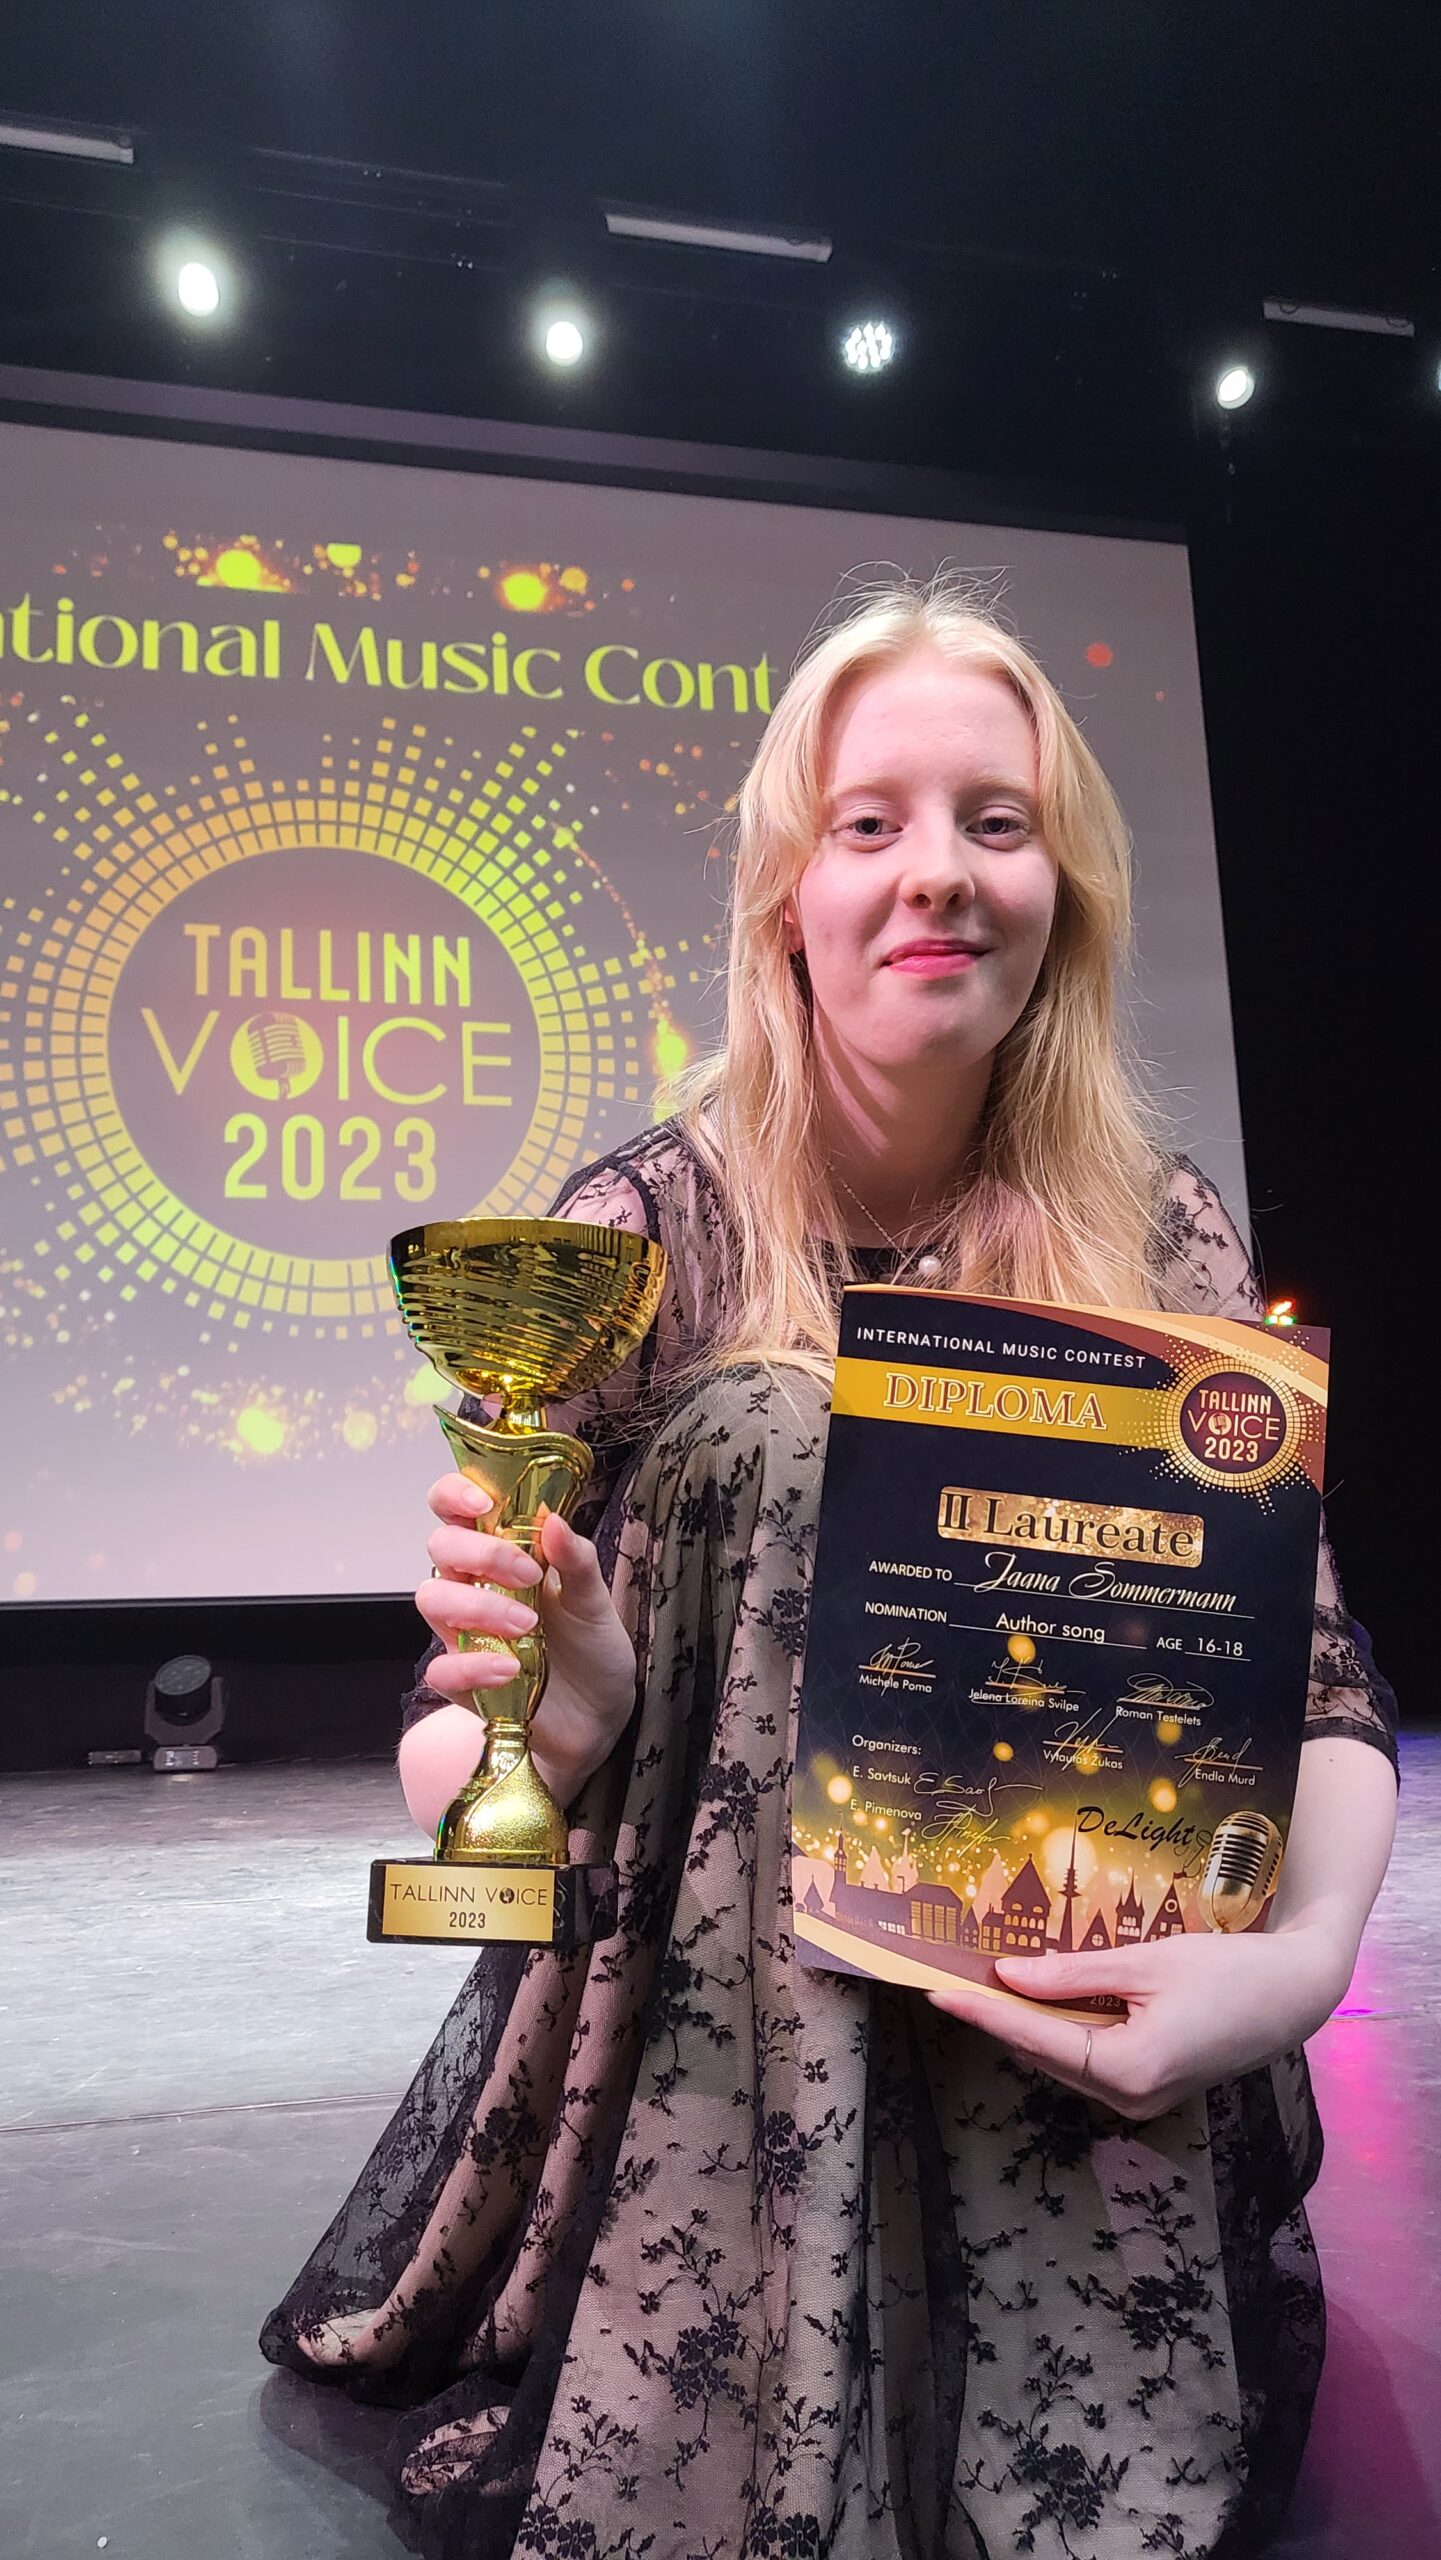 Rahvusvaheliselt laulukonkursilt “Tallinn Voice 2023” sai Jaana 2.laureaadi tiitli